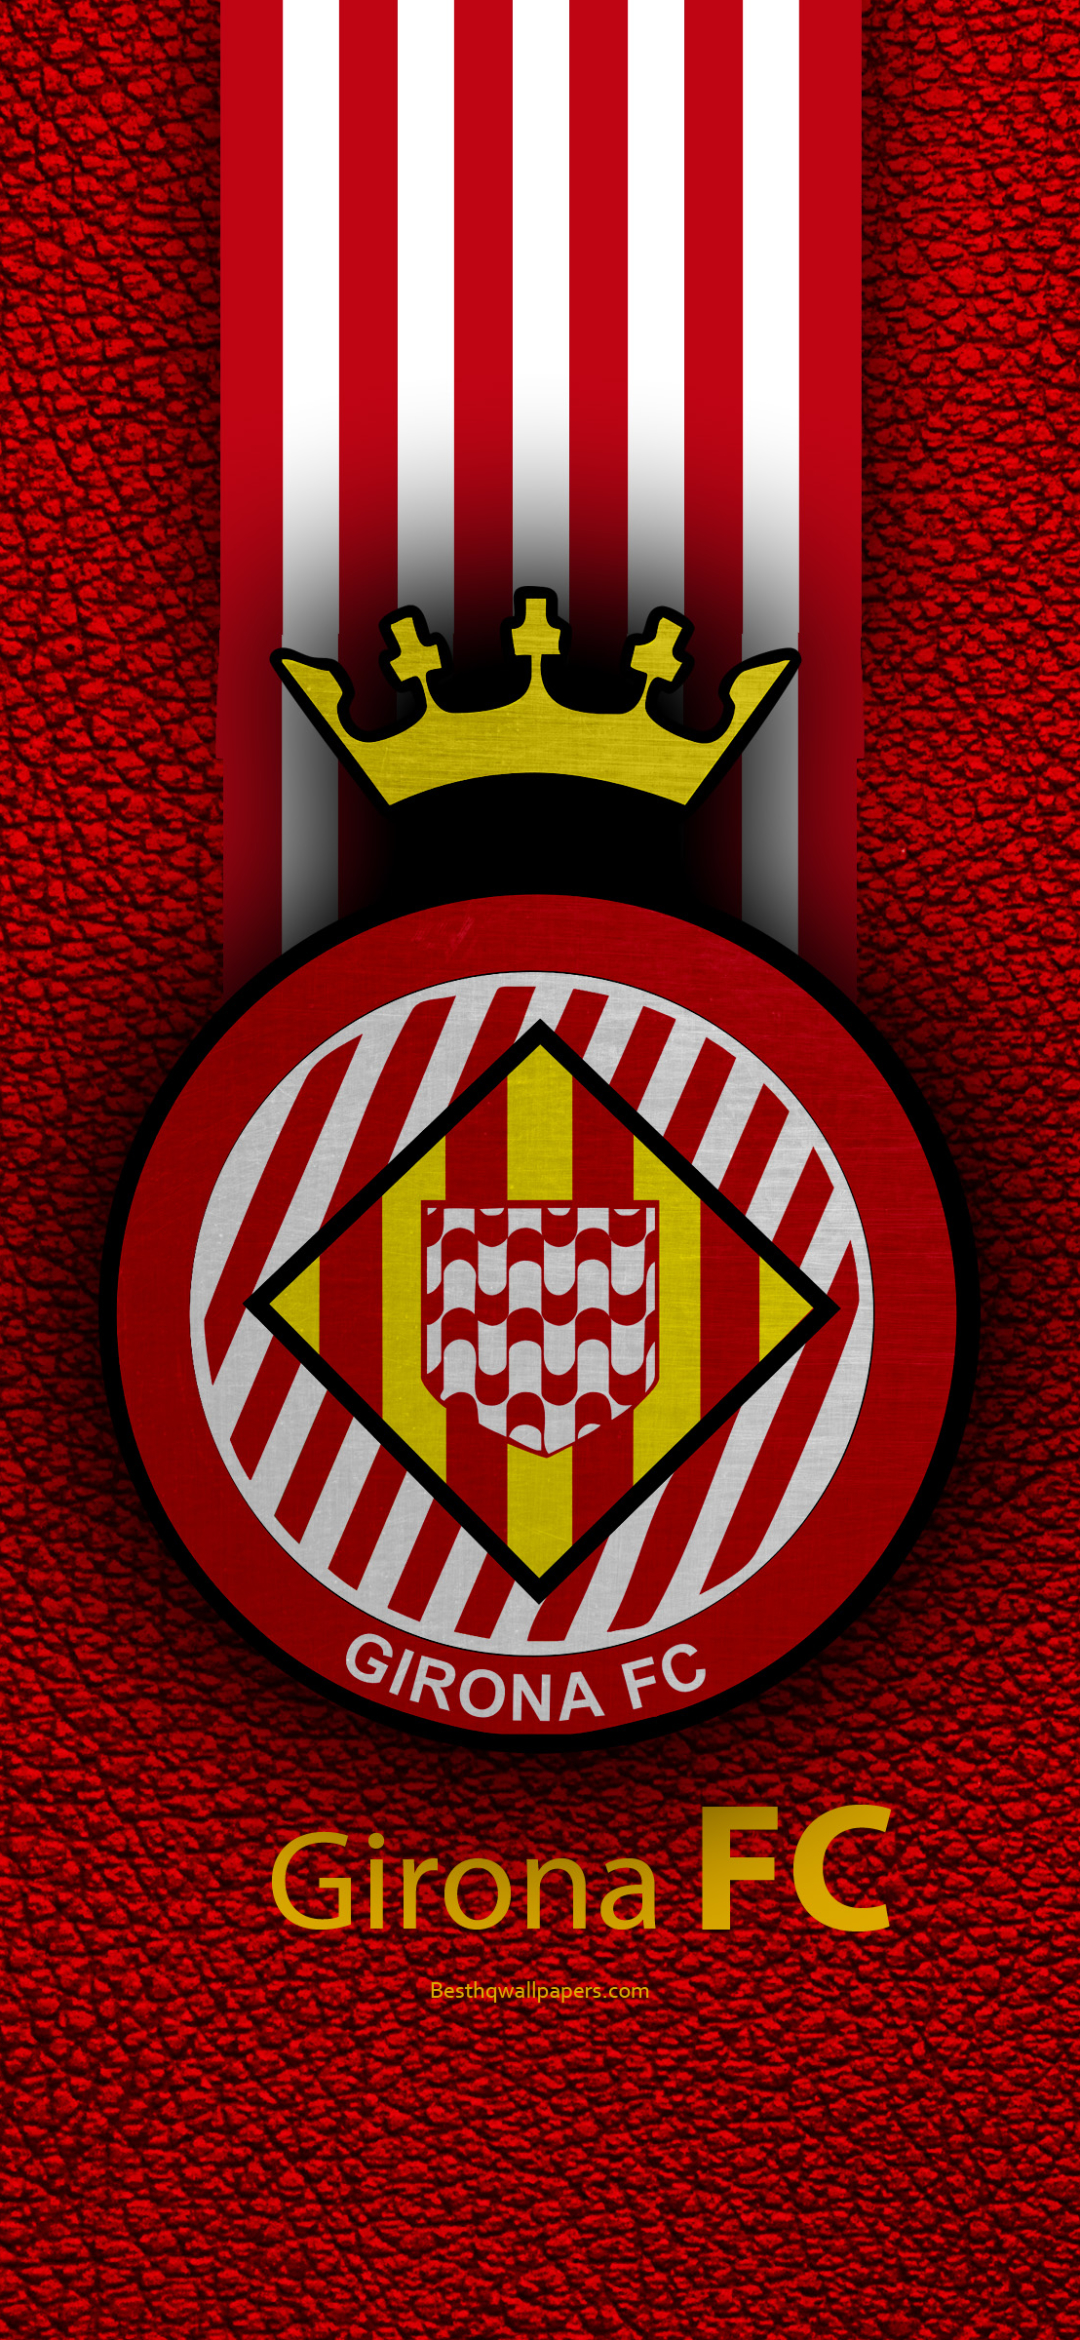 Girona Fc HD Smartphone Background